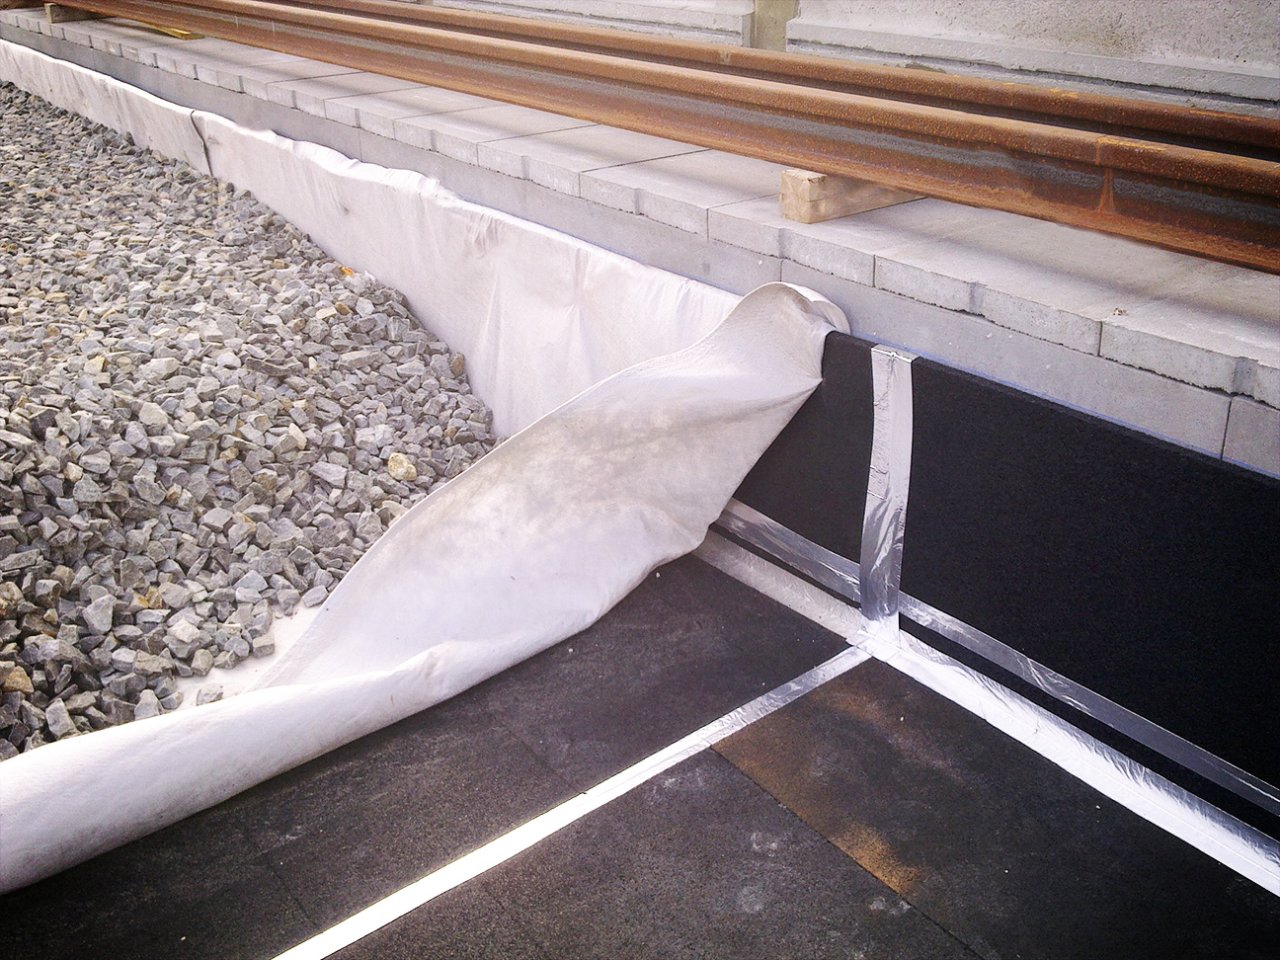 Bild påmMattor av ett vibrationsdämpande material som läggs ut under ballasten vid installation av en ny räls för tåg.